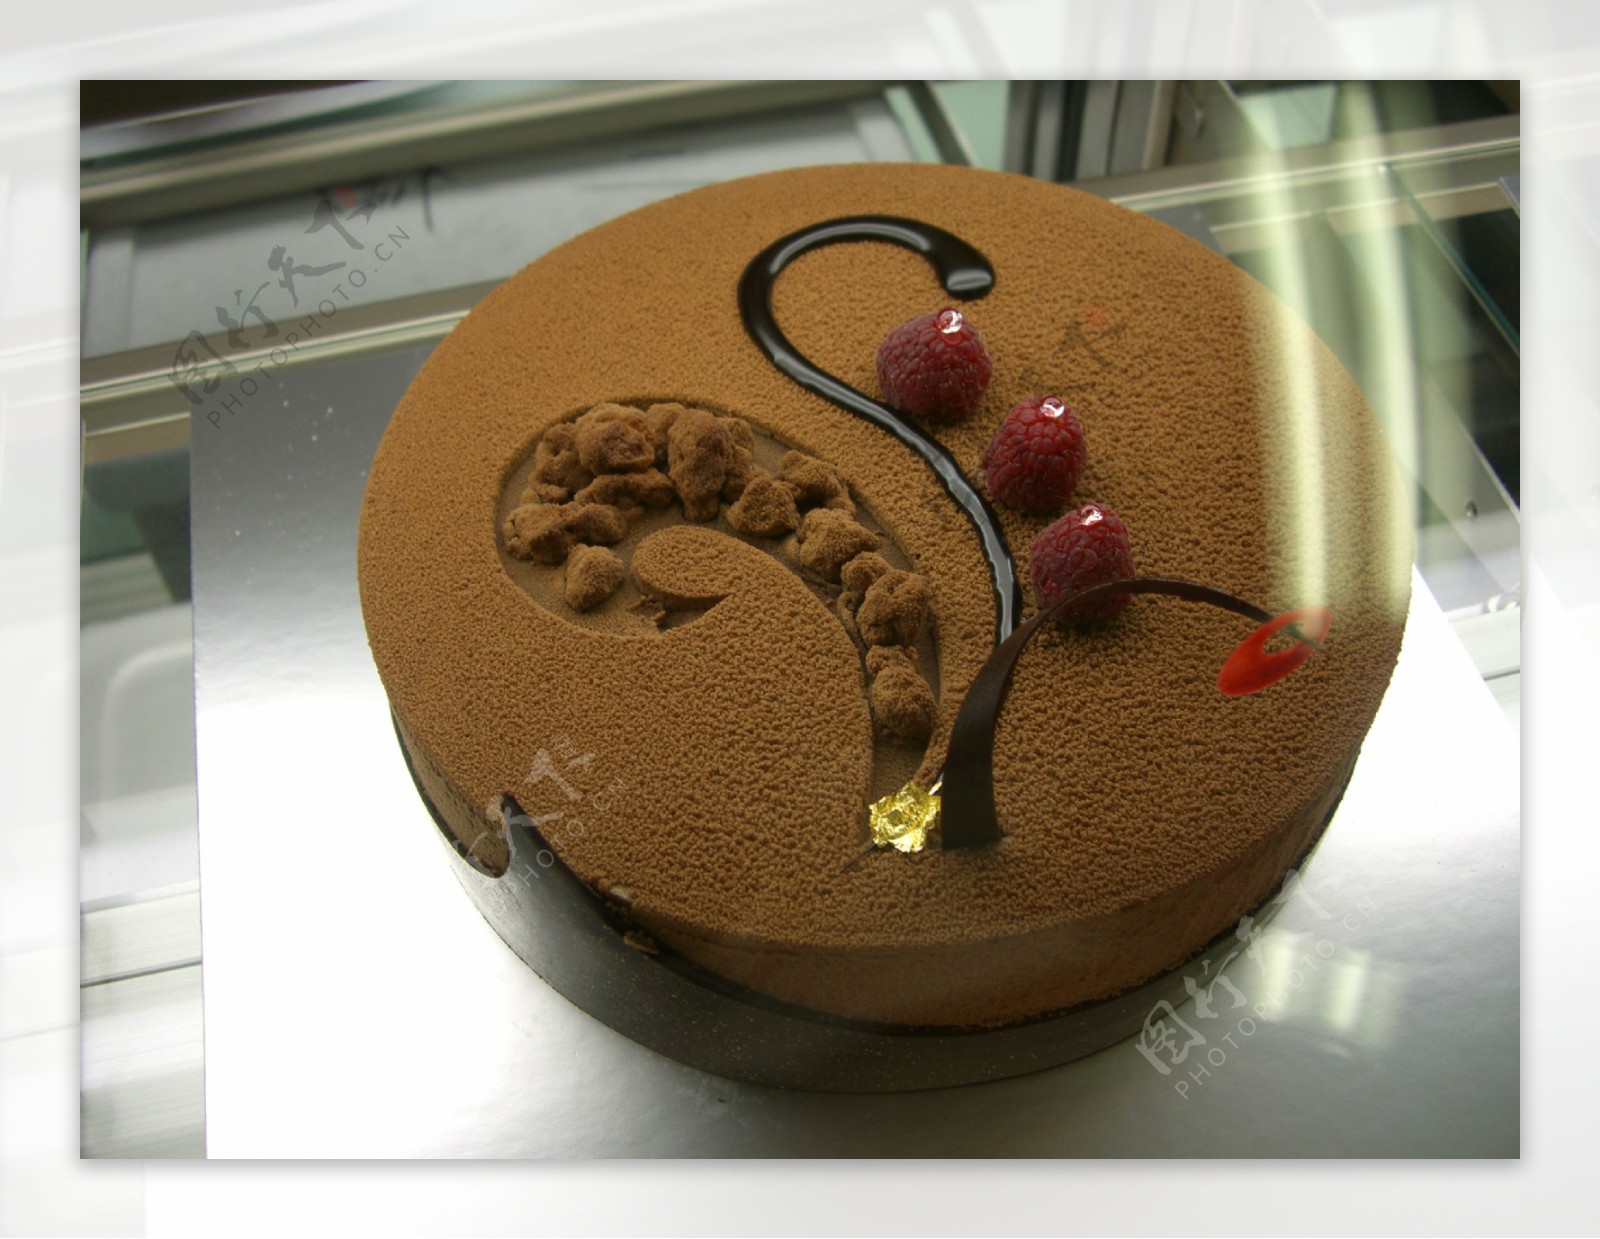 提拉米苏乐酷蛋糕图片